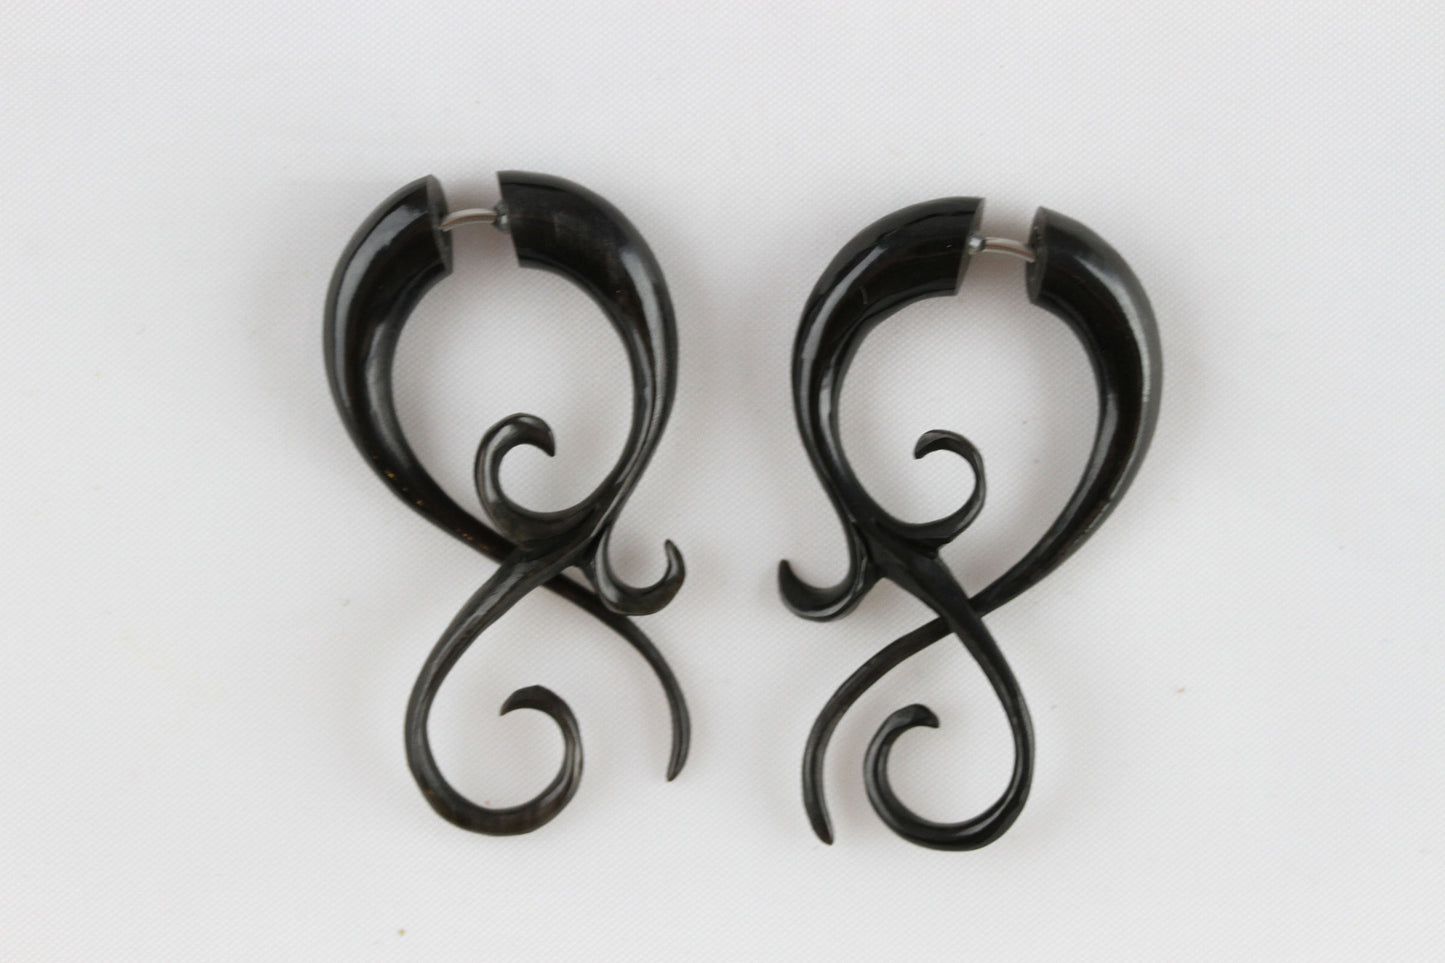 Horn Twist Hanger Plugs - Fake pair